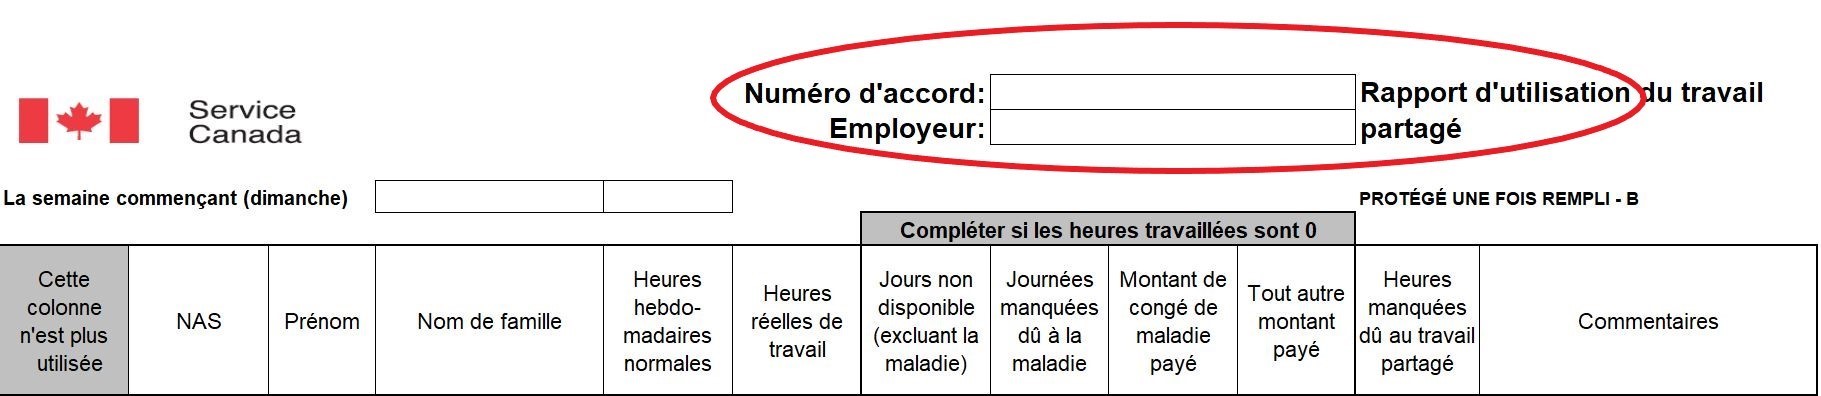 Capture d’écran du formulaire montrant l’emplacement du champ Numéro d’accord et Employeur